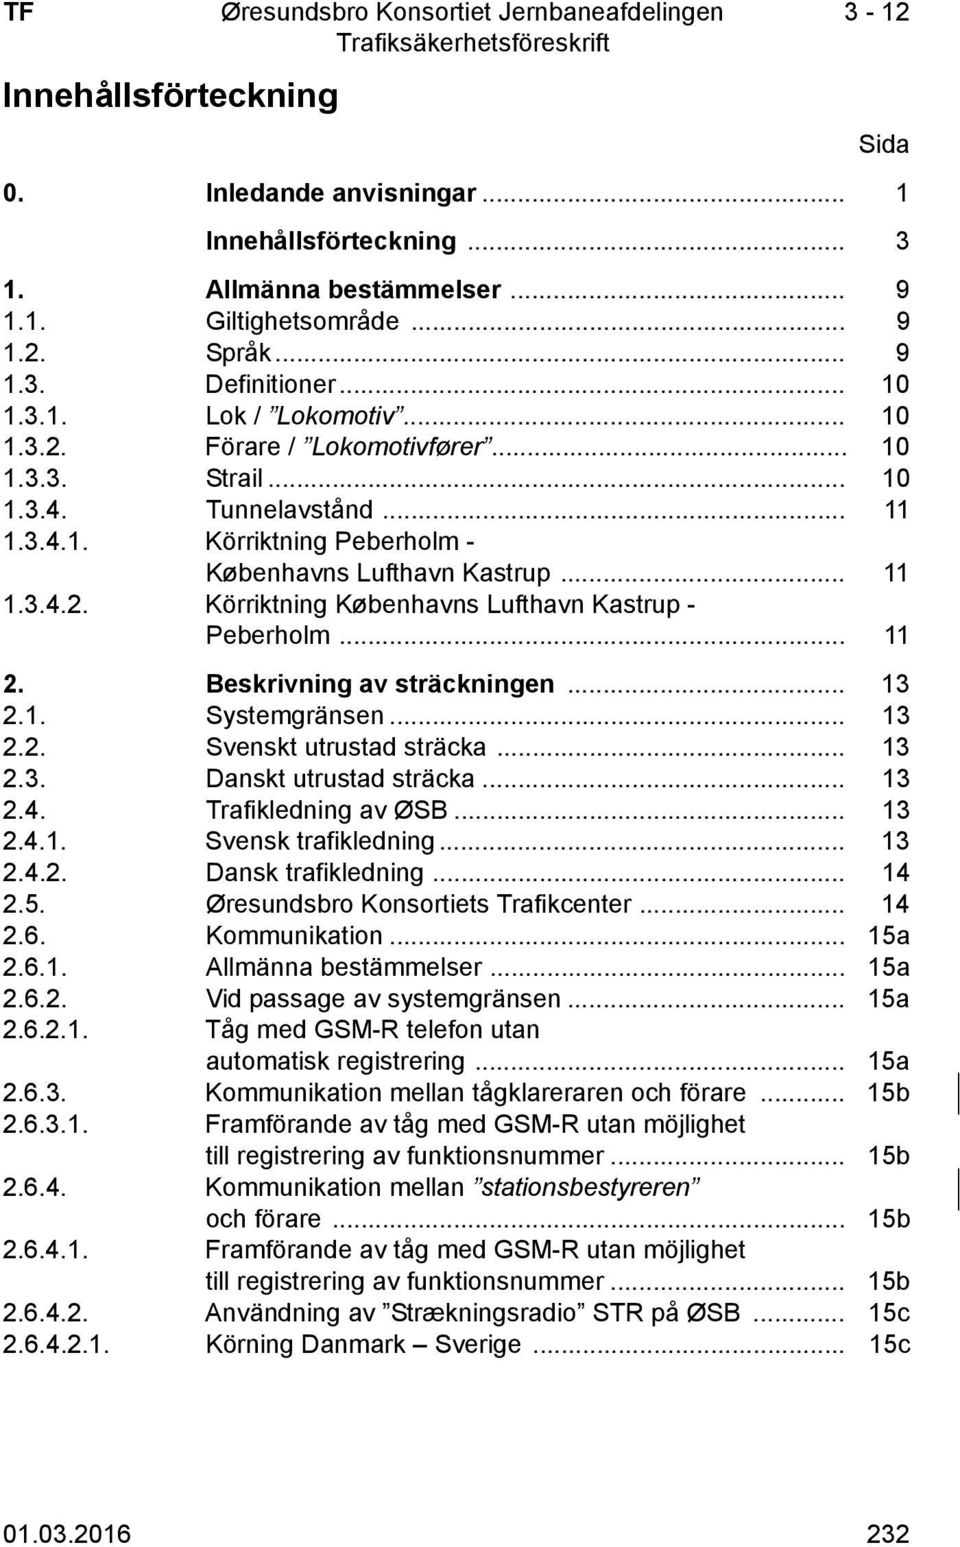 .. 11 2. Beskrivning av sträckningen... 13 2.1. Systemgränsen... 13 2.2. Svenskt utrustad sträcka... 13 2.3. Danskt utrustad sträcka... 13 2.4. Trafikledning av ØSB... 13 2.4.1. Svensk trafikledning.